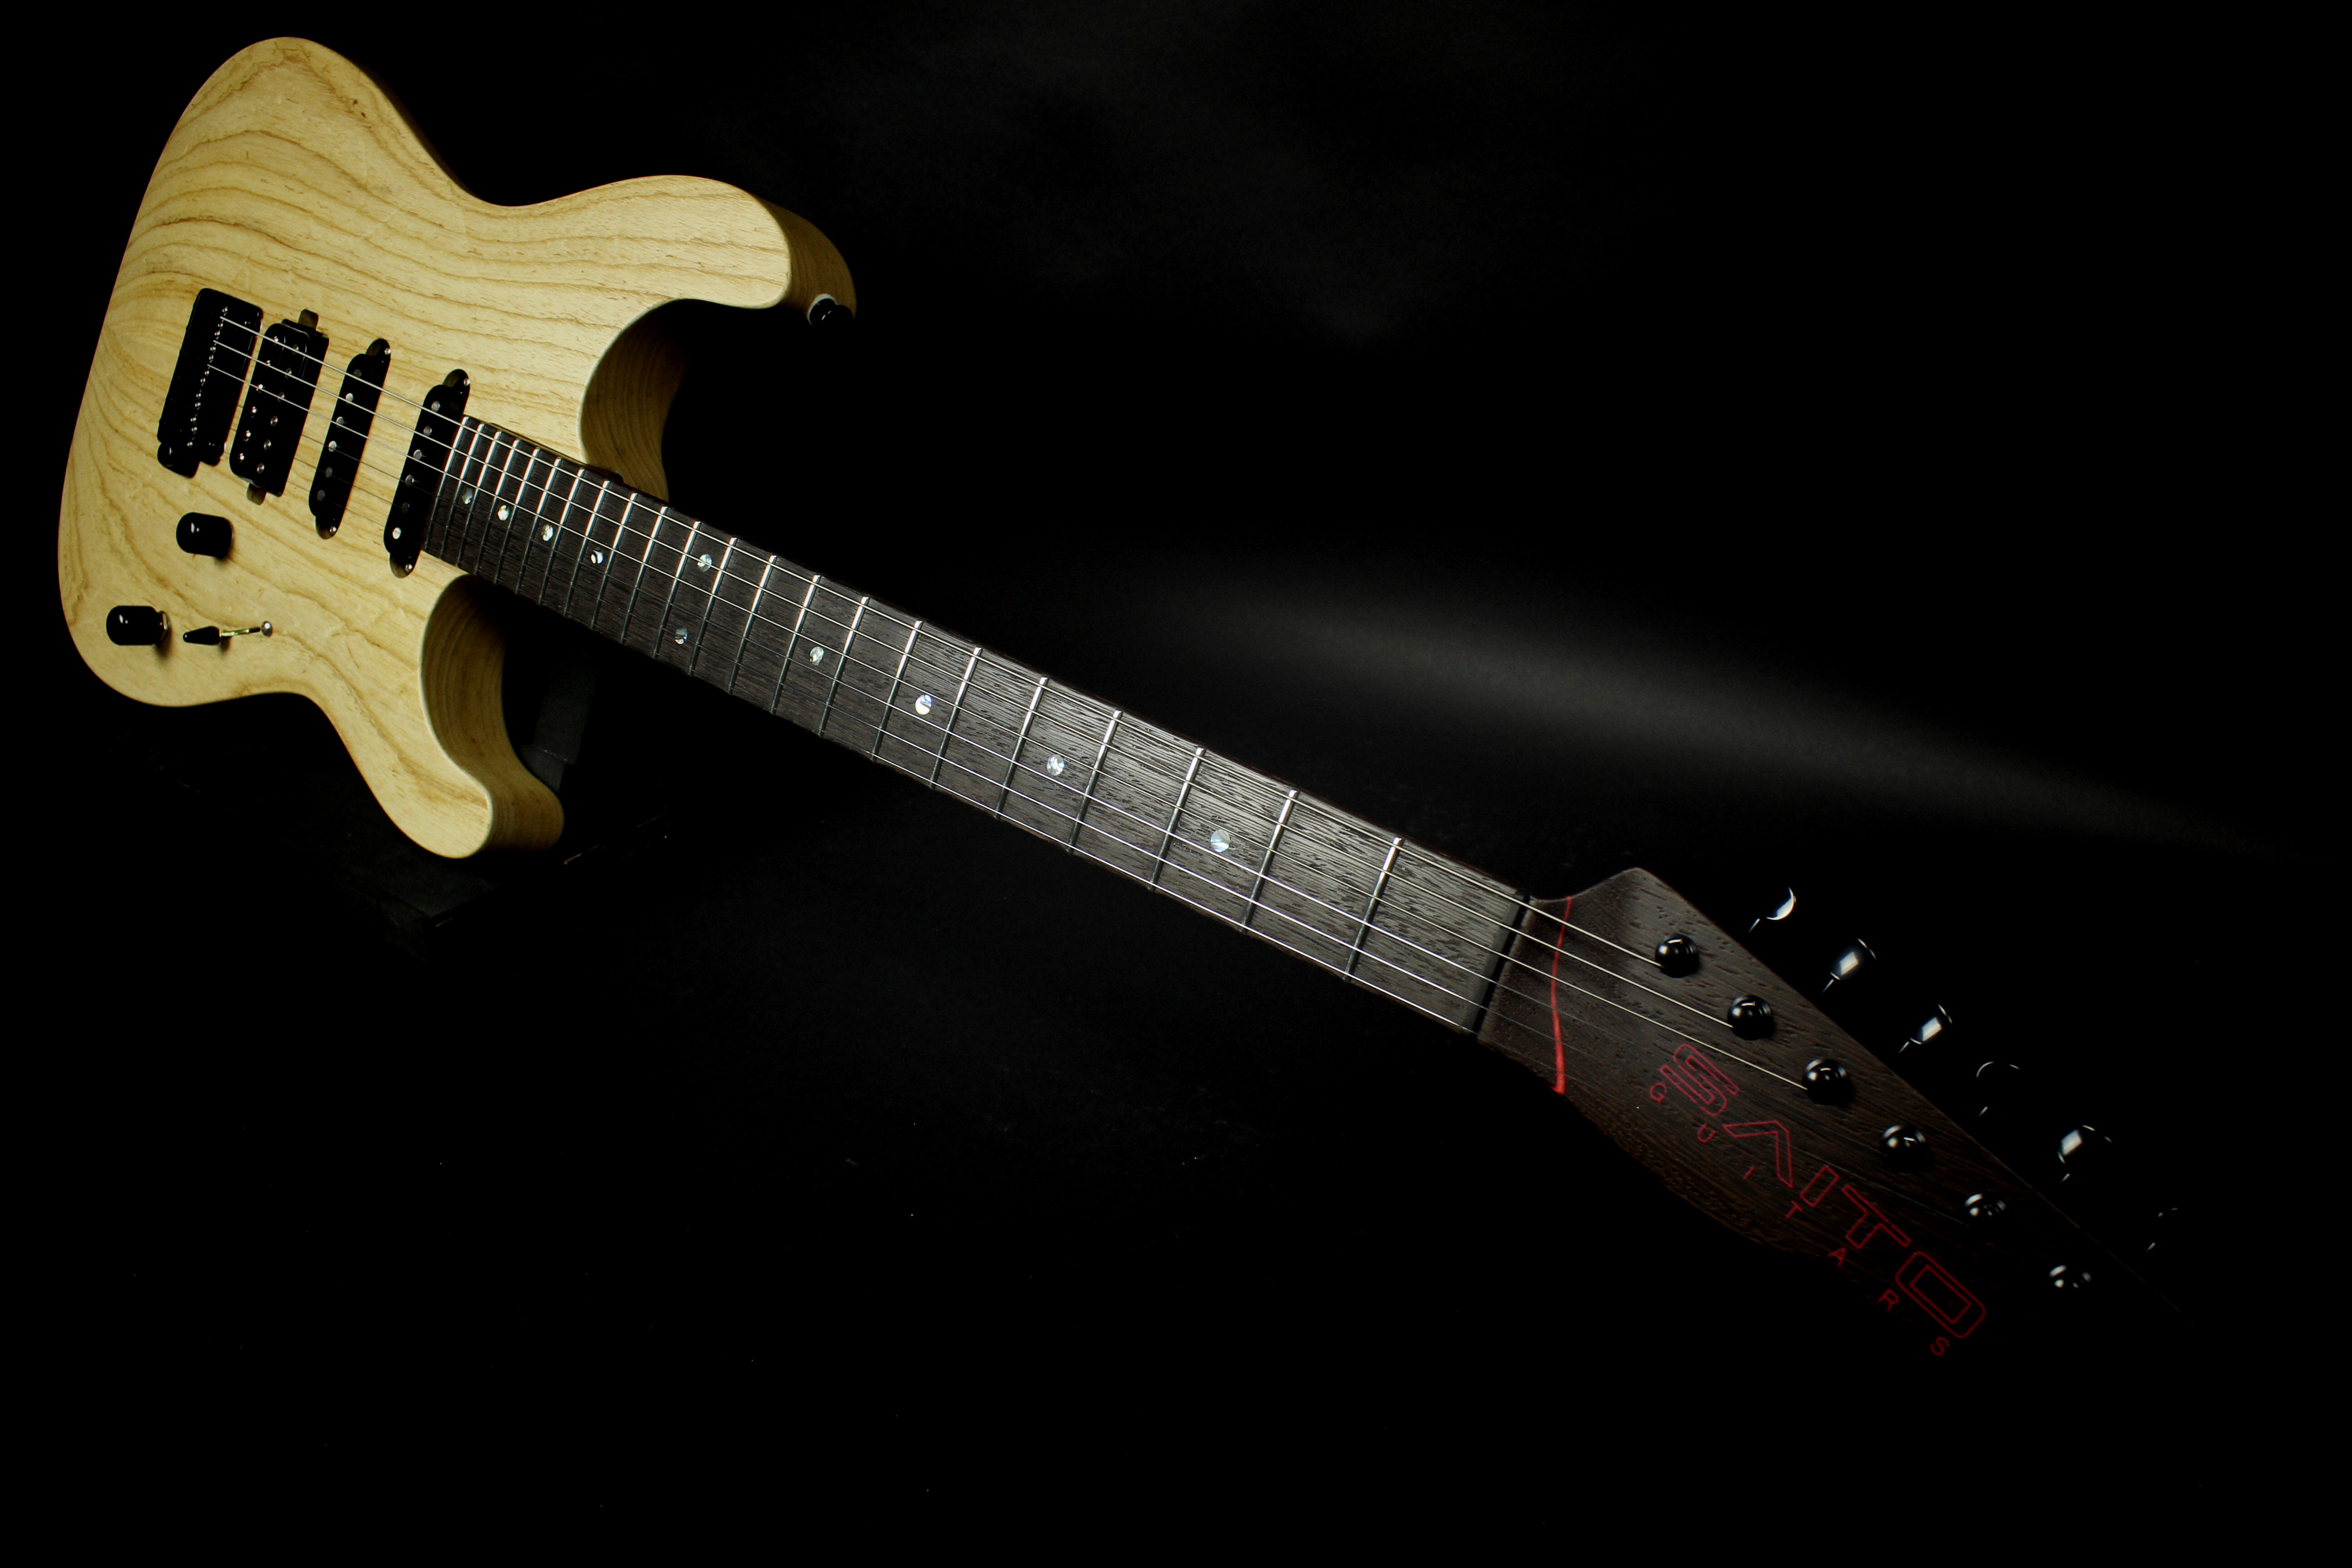 エレキギター 2 10更新 Saito Guitars 島村楽器 世界初 楽器店企画のextraordinaryシリーズが発売決定 島村楽器 新所沢パルコ店